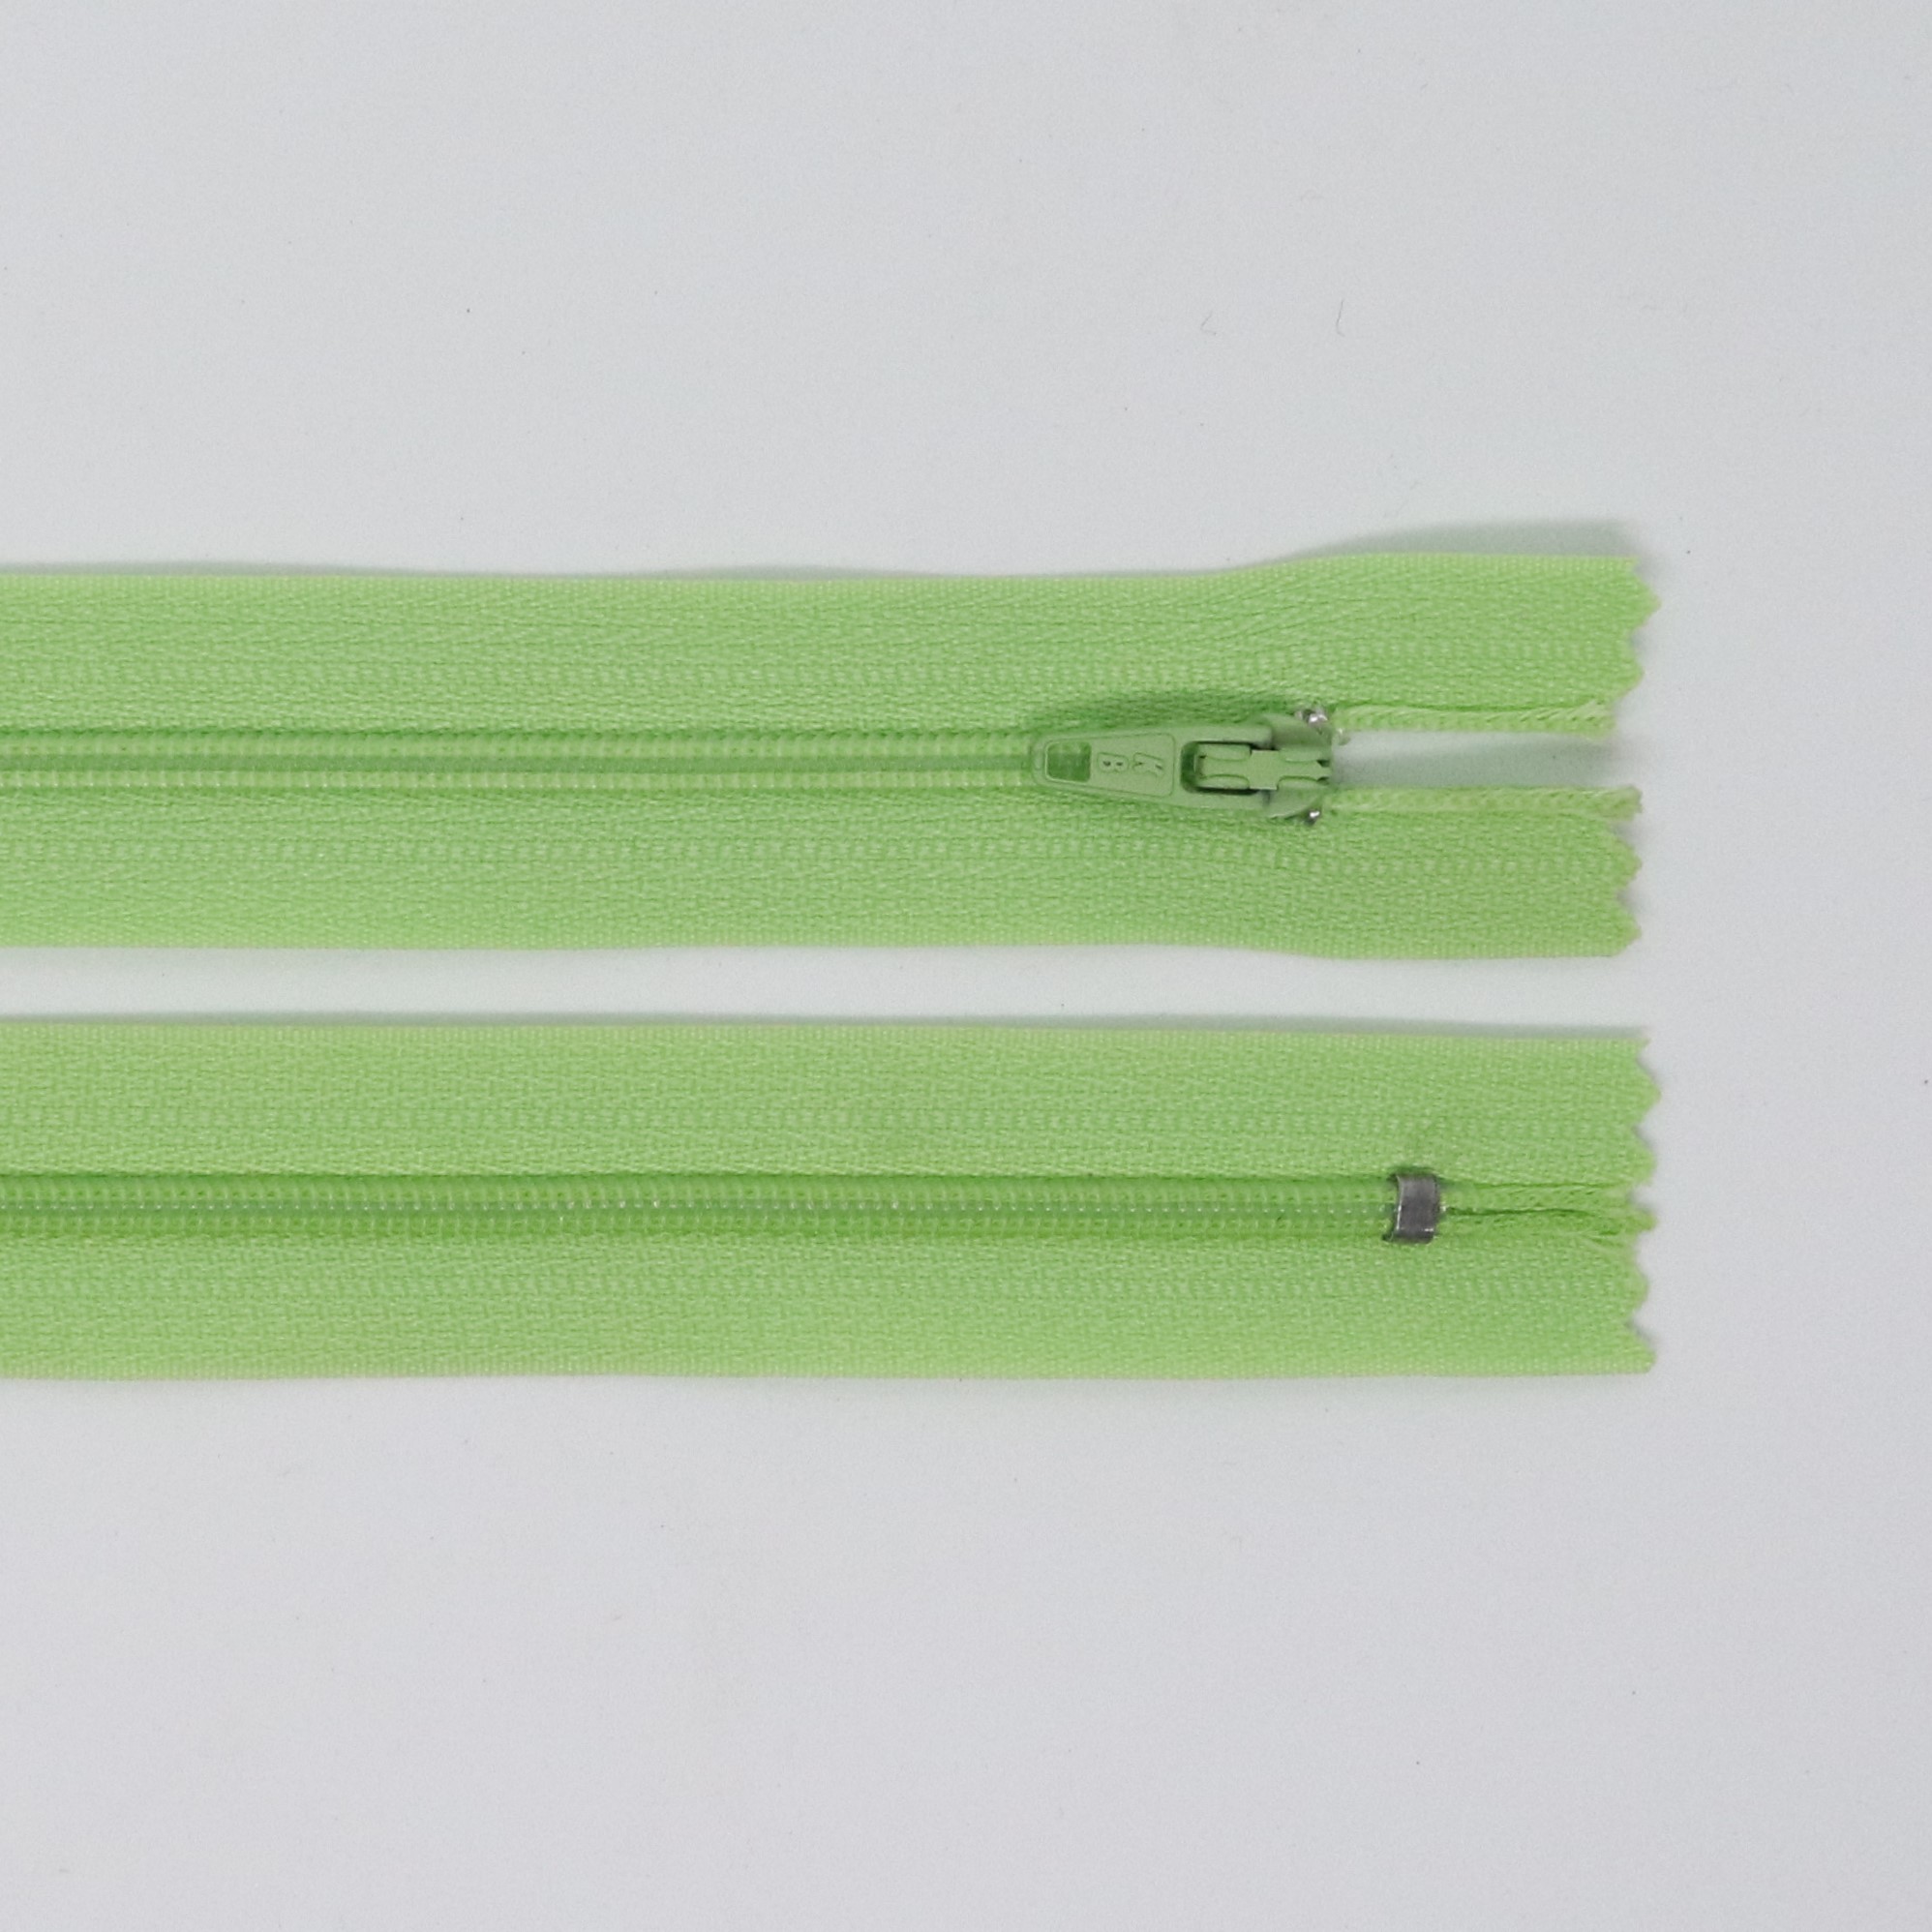 Spirálový zip, šíøe 3 mm, délka 45 cm, svìtle zelená - zvìtšit obrázek